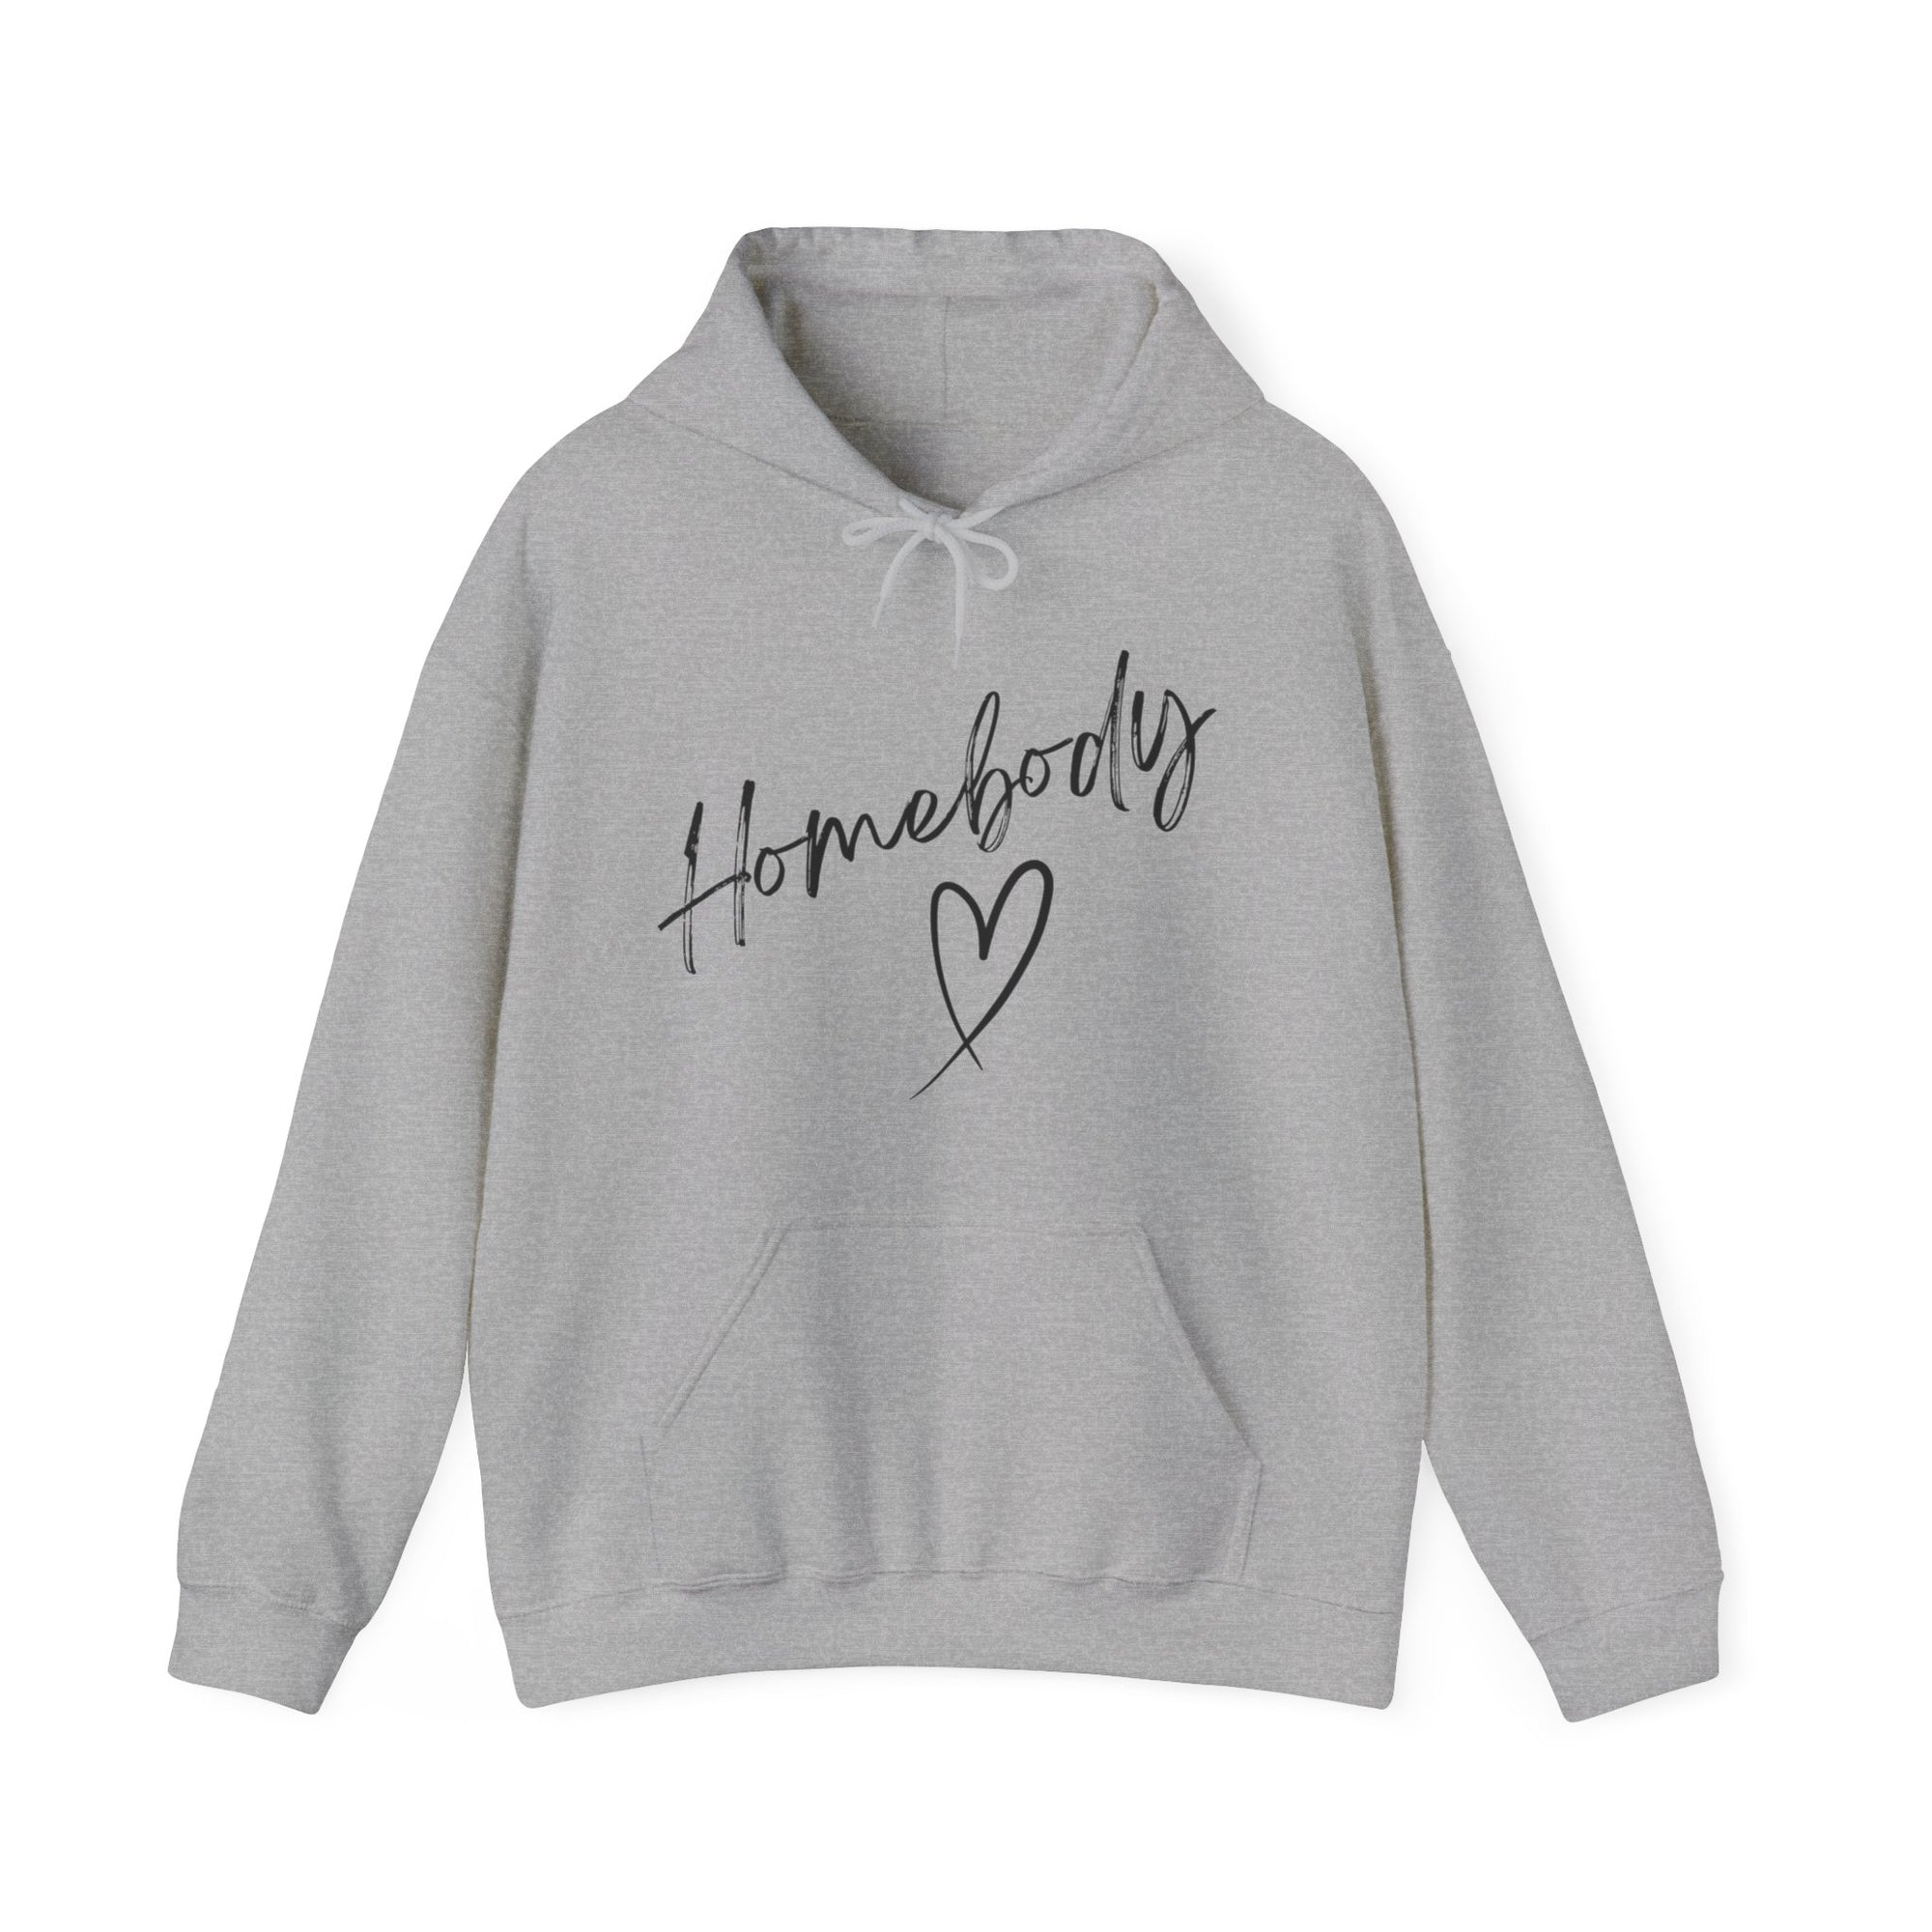 "Homebody Hooded Sweatshirt